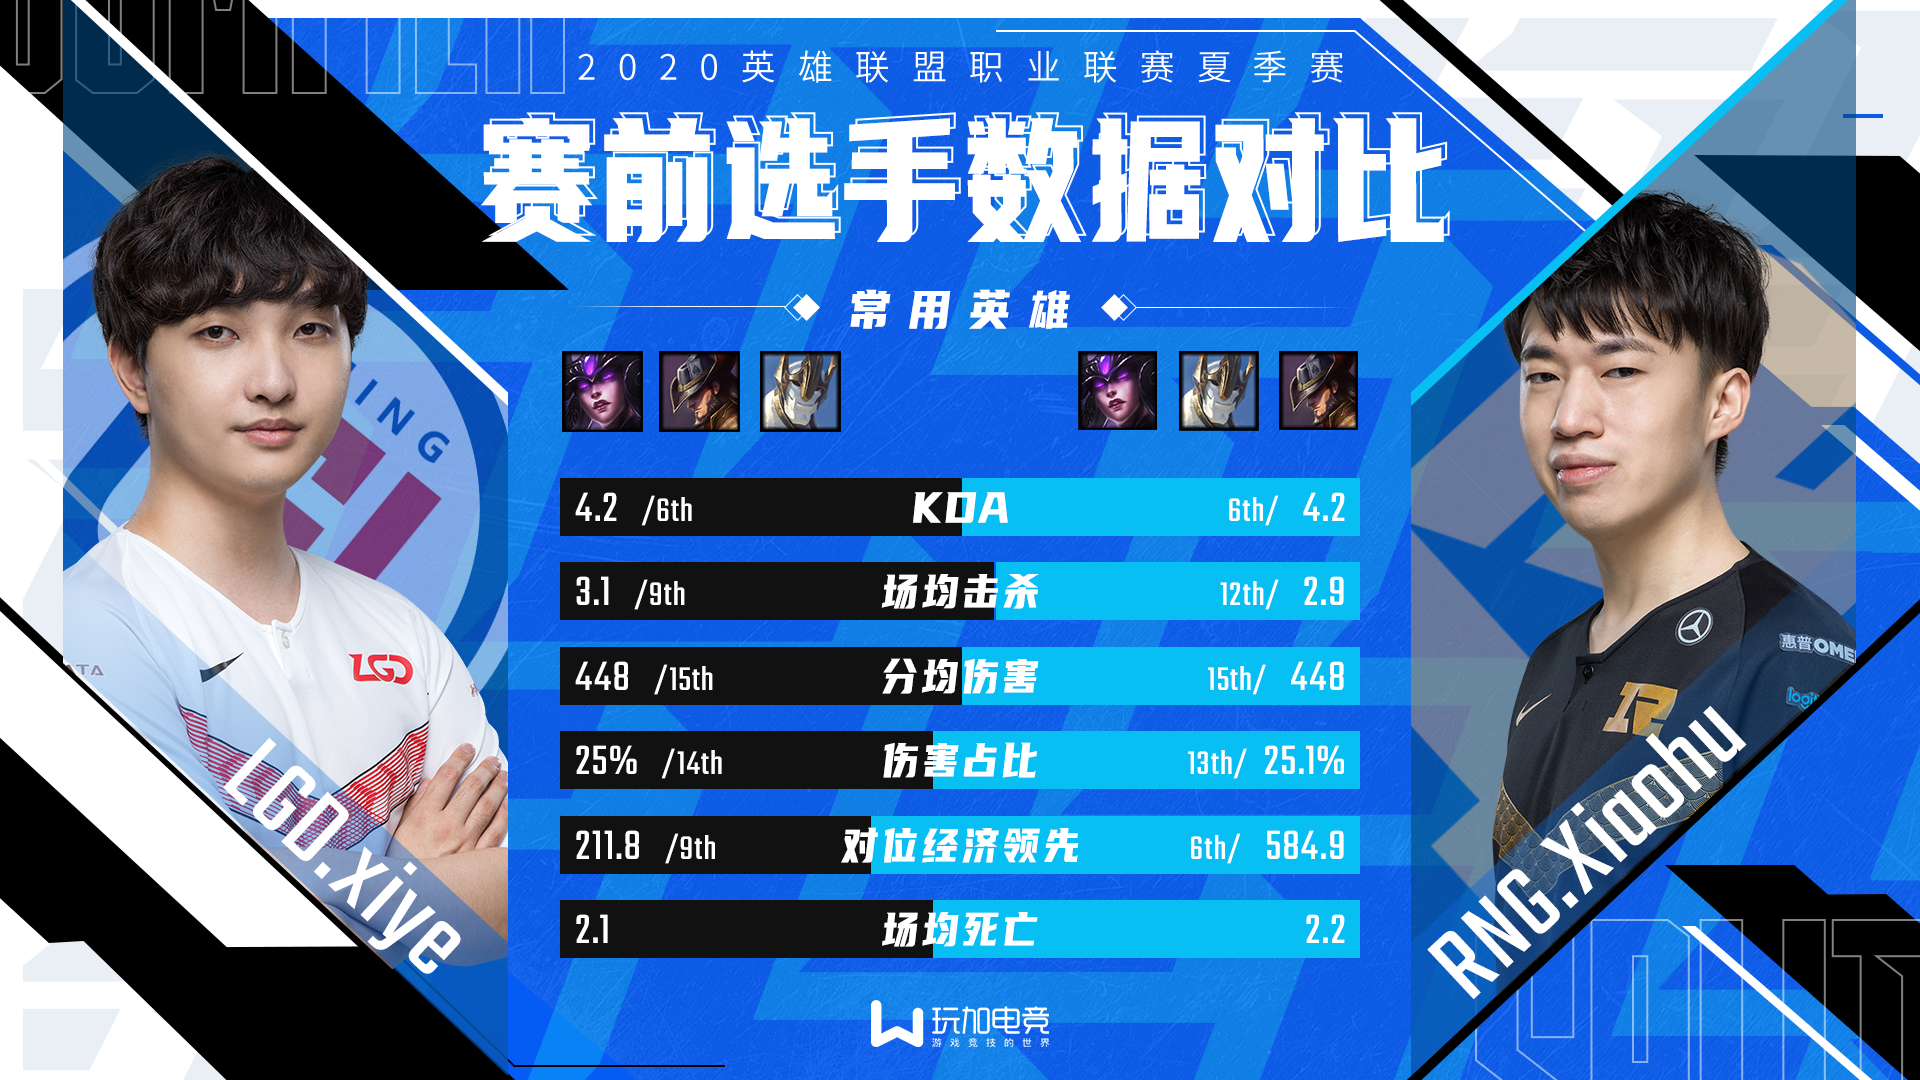 [选手数据对比] Xiye vs Xiaohu 老牌国产中单的新较量